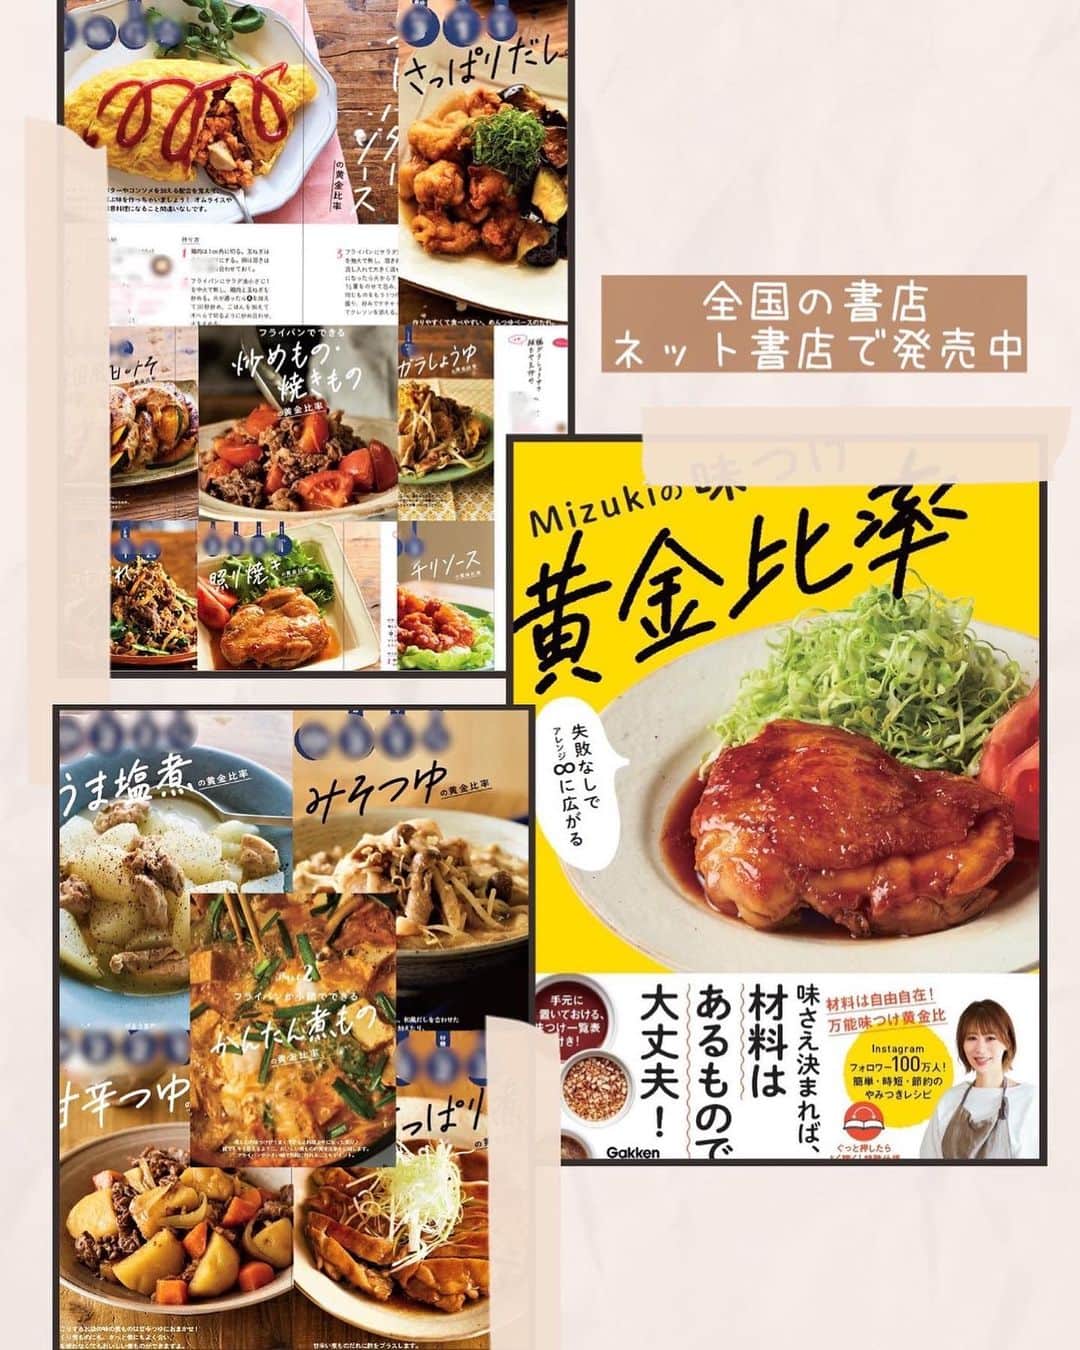 Mizuki【料理ブロガー・簡単レシピ】さんのインスタグラム写真 - (Mizuki【料理ブロガー・簡単レシピ】Instagram)「・#ウワサのお客さま レシピ📺 ⁡ ［#レシピ ］ ーーーーーーーーーーーーーー 速攻ほったらかしチャプチェ ーーーーーーーーーーーーーー ⁡ ⁡ ⁡ おはようございます☺️ ⁡ 今日のレシピは #ウワサのお客さま でもご紹介した \ 速攻ほったらかしチャプチェ / ⁡ 春雨は戻さない💕 味付けは下味のみで失敗なし✨ 材料を重ねたら ''フライパンにおまかせ''の 超簡単手間抜きレシピです🤭 ⁡ 冷凍ほうれん草を使えば アク抜き要らずで時短できますよ〜👌 (今野菜高いから冷凍野菜助かる🙏) レシピ下の《ポイント》に アレンジ方法も記載いたしましたので よかったらお試しくださいね🥰 ⁡ ⁡ ⁡ ⋱⋰ ⋱⋰ ⋱⋰ ⋱⋰ ⋱⋰ ⋱⋰ ⋱⋰ 📍簡単・時短・節約レシピ更新中  Threadsもこちらから▼ @mizuki_31cafe ⁡ 📍謎の暮らし＆変なライブ垢 @mizuki_kurashi ⋱⋰ ⋱⋰ ⋱⋰ ⋱⋰ ⋱⋰ ⋱⋰ ⋱⋰ ⁡ ⁡ ⁡ ＿＿＿＿＿＿＿＿＿＿＿＿＿＿＿＿＿＿＿ 【2人分】 豚こま切れ肉…150g 冷凍ほうれんそう…100g 玉ねぎ…1/2個 乾燥緑豆春雨(ショートタイプ)…50g ●オイスターソース・醤油・みりん・ごま油…各大1 水…150ml ごま…適量   1.玉ねぎは薄切りにする。豚肉に●をからめる。 2.フライパンに春雨(乾燥のまま)→玉ねぎ→ほうれんそう(冷凍のまま)→豚肉の順に広げて重ね、 水を注ぐ。蓋をして中火にかけ、7分蒸し焼きにする。 3.蓋を外して炒め合わせ、器に盛り、ごまを振る。 ￣￣￣￣￣￣￣￣￣￣￣￣￣￣￣￣￣￣￣ ⁡ ⁡ 《ポイント》 ♦︎乾燥春雨を一番下にすることで、調味料や野菜から出た水分を春雨が吸って戻る効率的なレシピです♩ ♦︎生のほうれん草を使用する場合はさっと下茹でするか、根元を水に晒すなどしてアク抜きすると◎ ♦︎ほうれん草の代わりに小松菜を使用しても♩(小松菜の場合は生のまま4cm長さに切るだけ) ⁡ ⁡ ⁡ ⁡ ⁡ ⁡ ⋱⋰ ⋱⋰ ⋱⋰ ⋱⋰ ⋱⋰ ⋱⋰ ⋱⋰  愛用している調理器具・器など   #楽天ROOMに載せてます ‎𐩢𐩺  (ハイライトから飛べます🕊️) ⋱⋰ ⋱⋰ ⋱⋰ ⋱⋰ ⋱⋰ ⋱⋰ ⋱⋰ ⁡ ⁡ ⁡ ⁡ ⁡ ✼••┈┈┈┈┈••✼••┈┈┈┈┈••✼ 今日のごはんこれに決まり！ ‎𓊆#Mizukiのレシピノート 500品𓊇 ✼••┈┈┈┈┈••✼••┈┈┈┈┈••✼ ⁡ ˗ˏˋ おかげさまで25万部突破 ˎˊ˗ 料理レシピ本大賞準大賞を受賞しました✨ ⁡ 6000点の中からレシピを厳選し まさかの【500レシピ掲載】 肉や魚のメインおかずはもちろん 副菜、丼、麺、スープ、お菓子 ハレの日のレシピ、鍋のレシピまで 全てこの一冊で完結 𓌉◯𓇋 (全国の書店・ネット書店で発売中) ⁡ ⁡ ⁡ ⁡ ⁡ #チャプチェ #ほったらかし #ほったらかしレシピ #速攻料理 #ほったらかし料理 #ほったらかしチャプチェ #ほうれん草レシピ #節約料理  #簡単料理  #時短料理 #mizukiレシピ  #時短レシピ #節約レシピ #簡単レシピ」9月24日 7時06分 - mizuki_31cafe